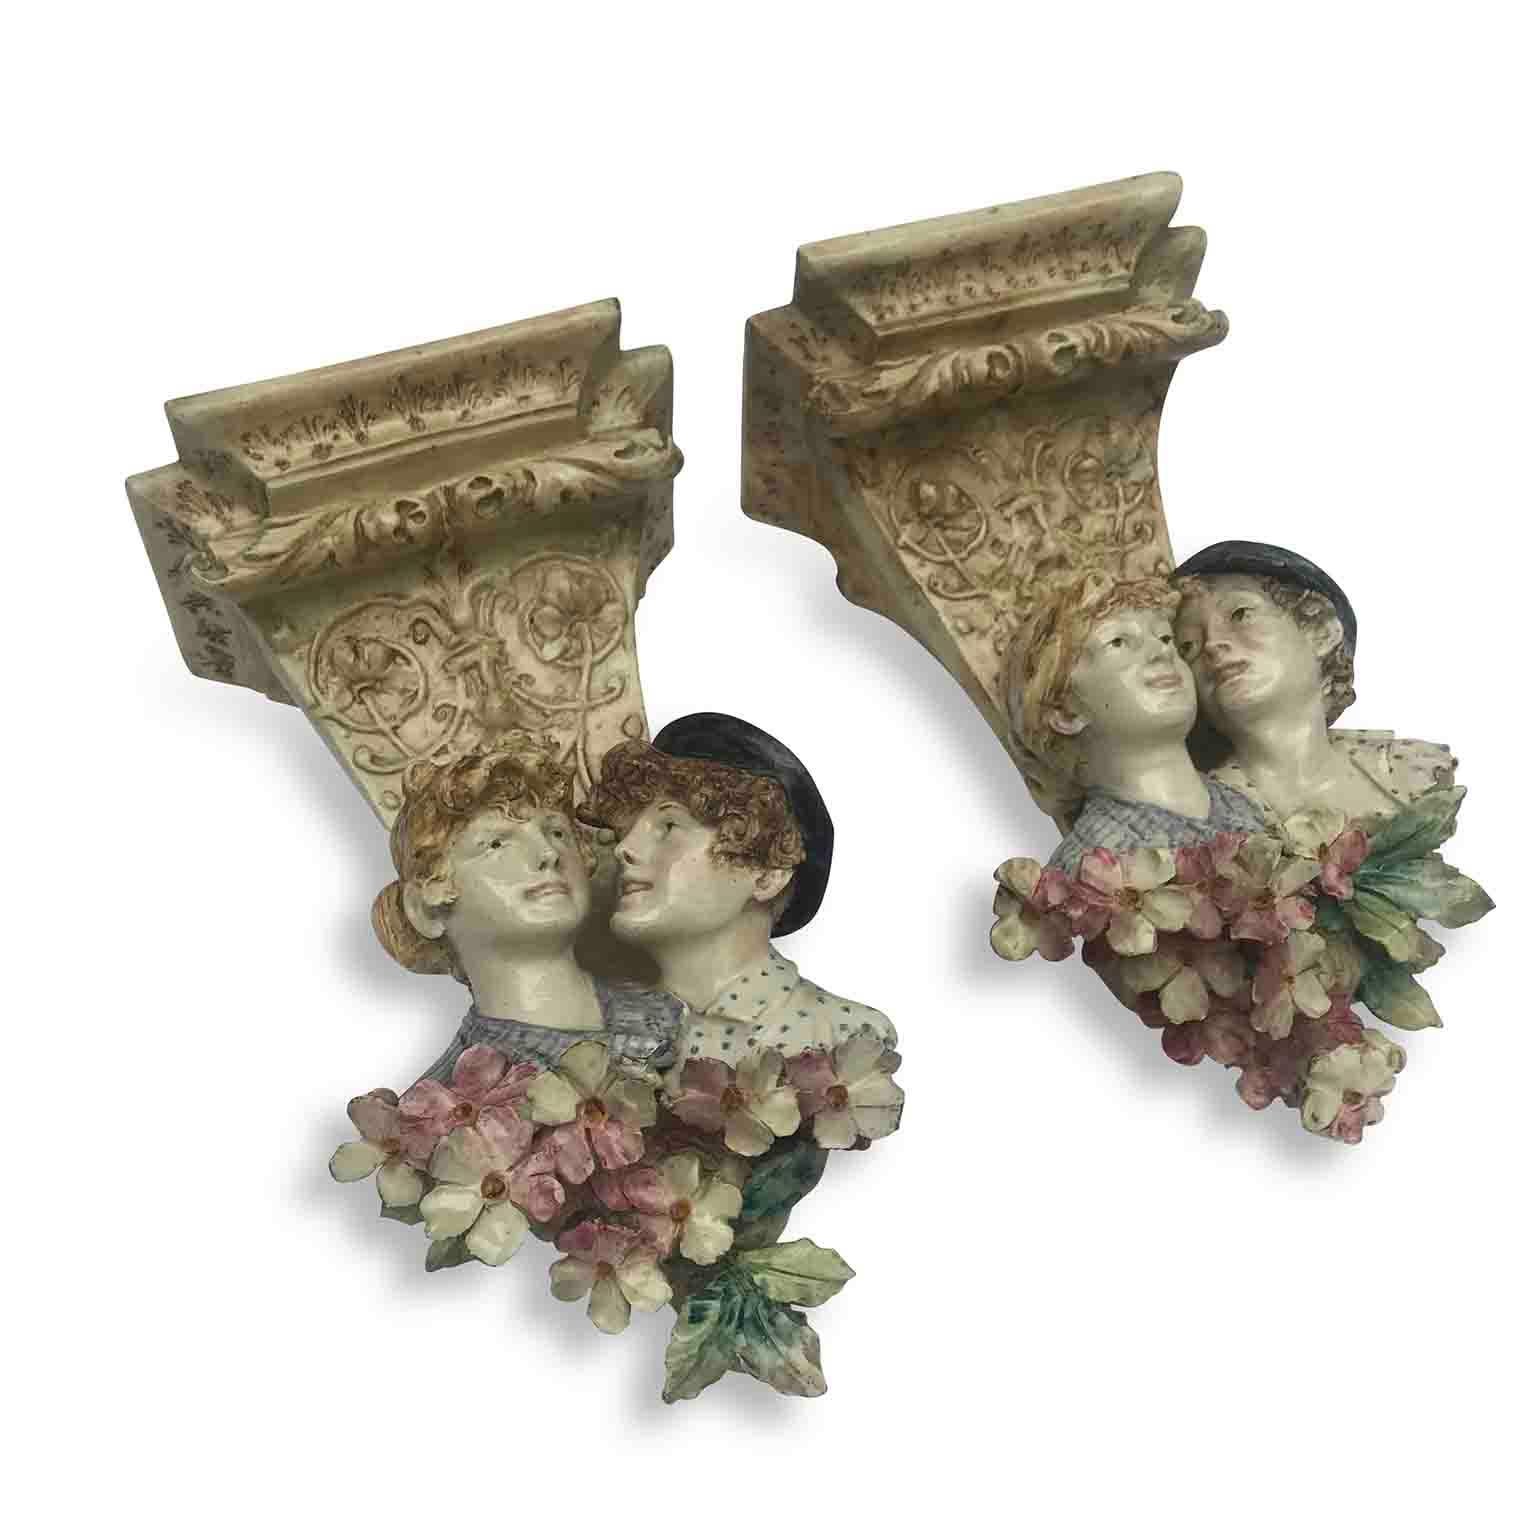 Paar italienische Jugendstil-Wandkonsolen des 20. Jahrhunderts, zwei handmodellierte, handbemalte Keramikkonsolen mit feinem polychromen Dekor mit halbbrüstigen Mädchen- und Knabenfiguren und Blumen. 
Es handelt sich um eine norditalienische